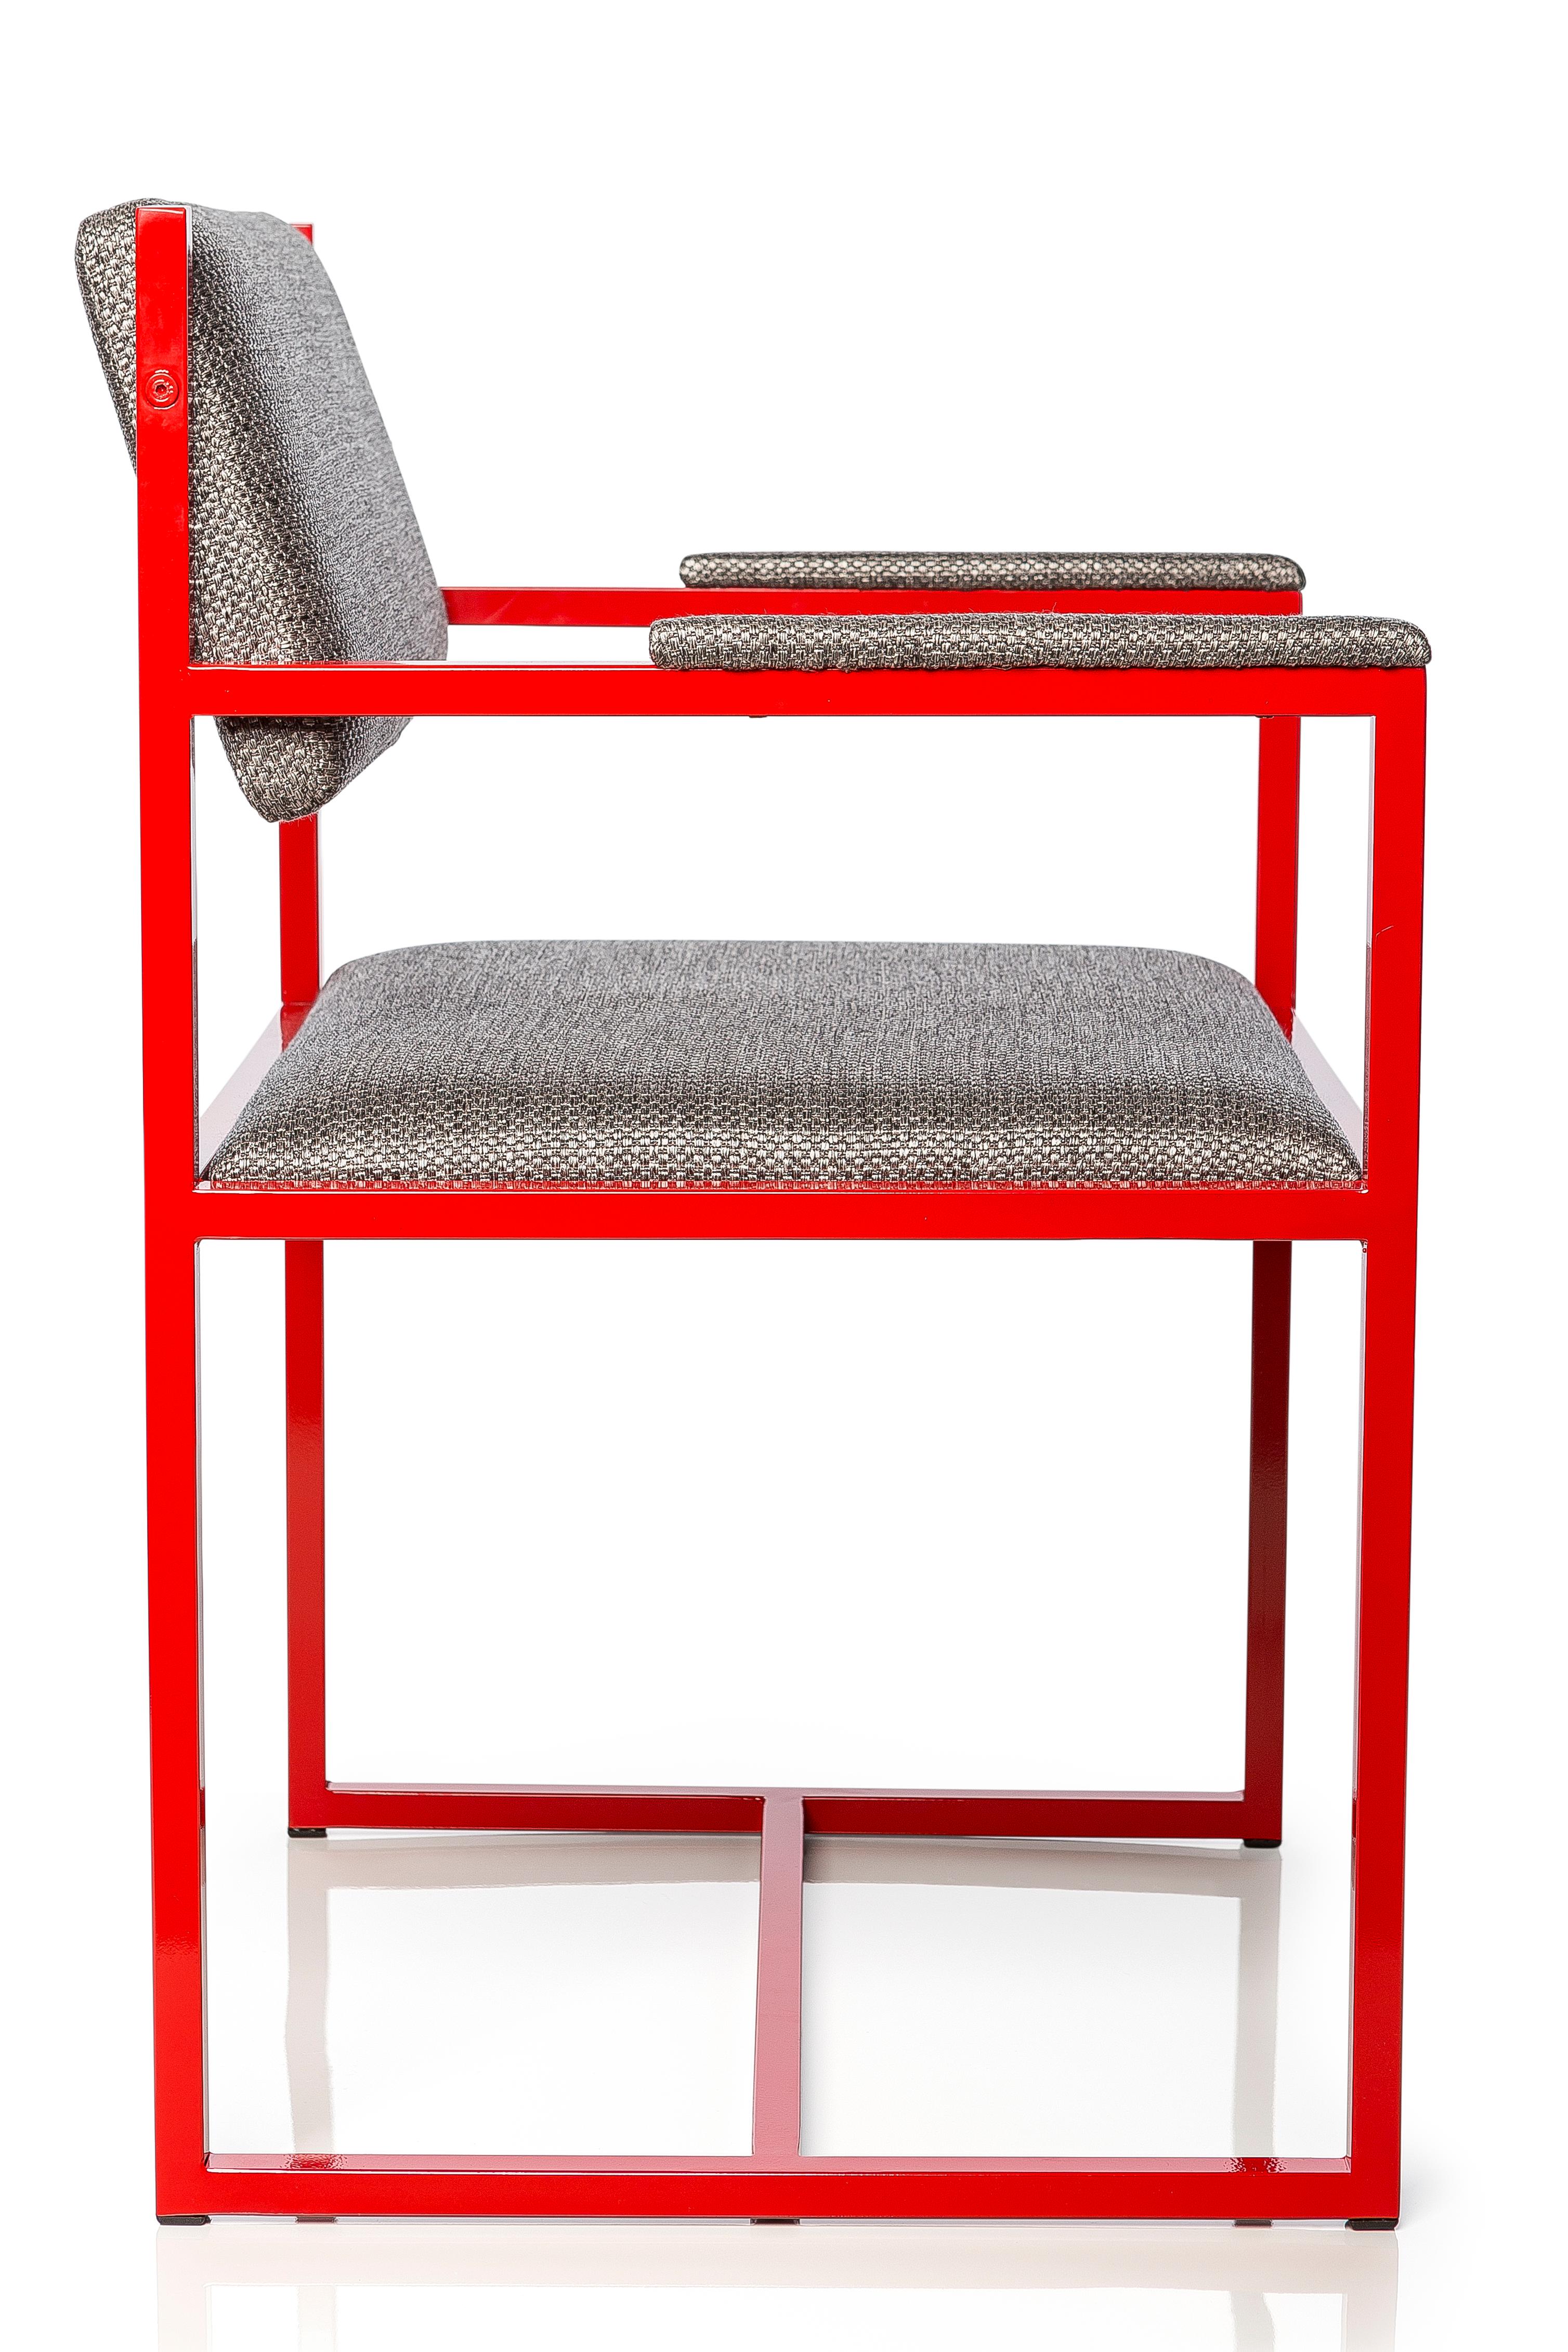 En l'honneur des 100 ans du Bauhaus, la chaise Gaia reflète la pureté et la force de la célèbre école.

La pièce, aux lignes pures et aux couleurs primaires, possède un dossier pivotant, qui s'adapte à la colonne de l'utilisateur, qu'il s'agisse